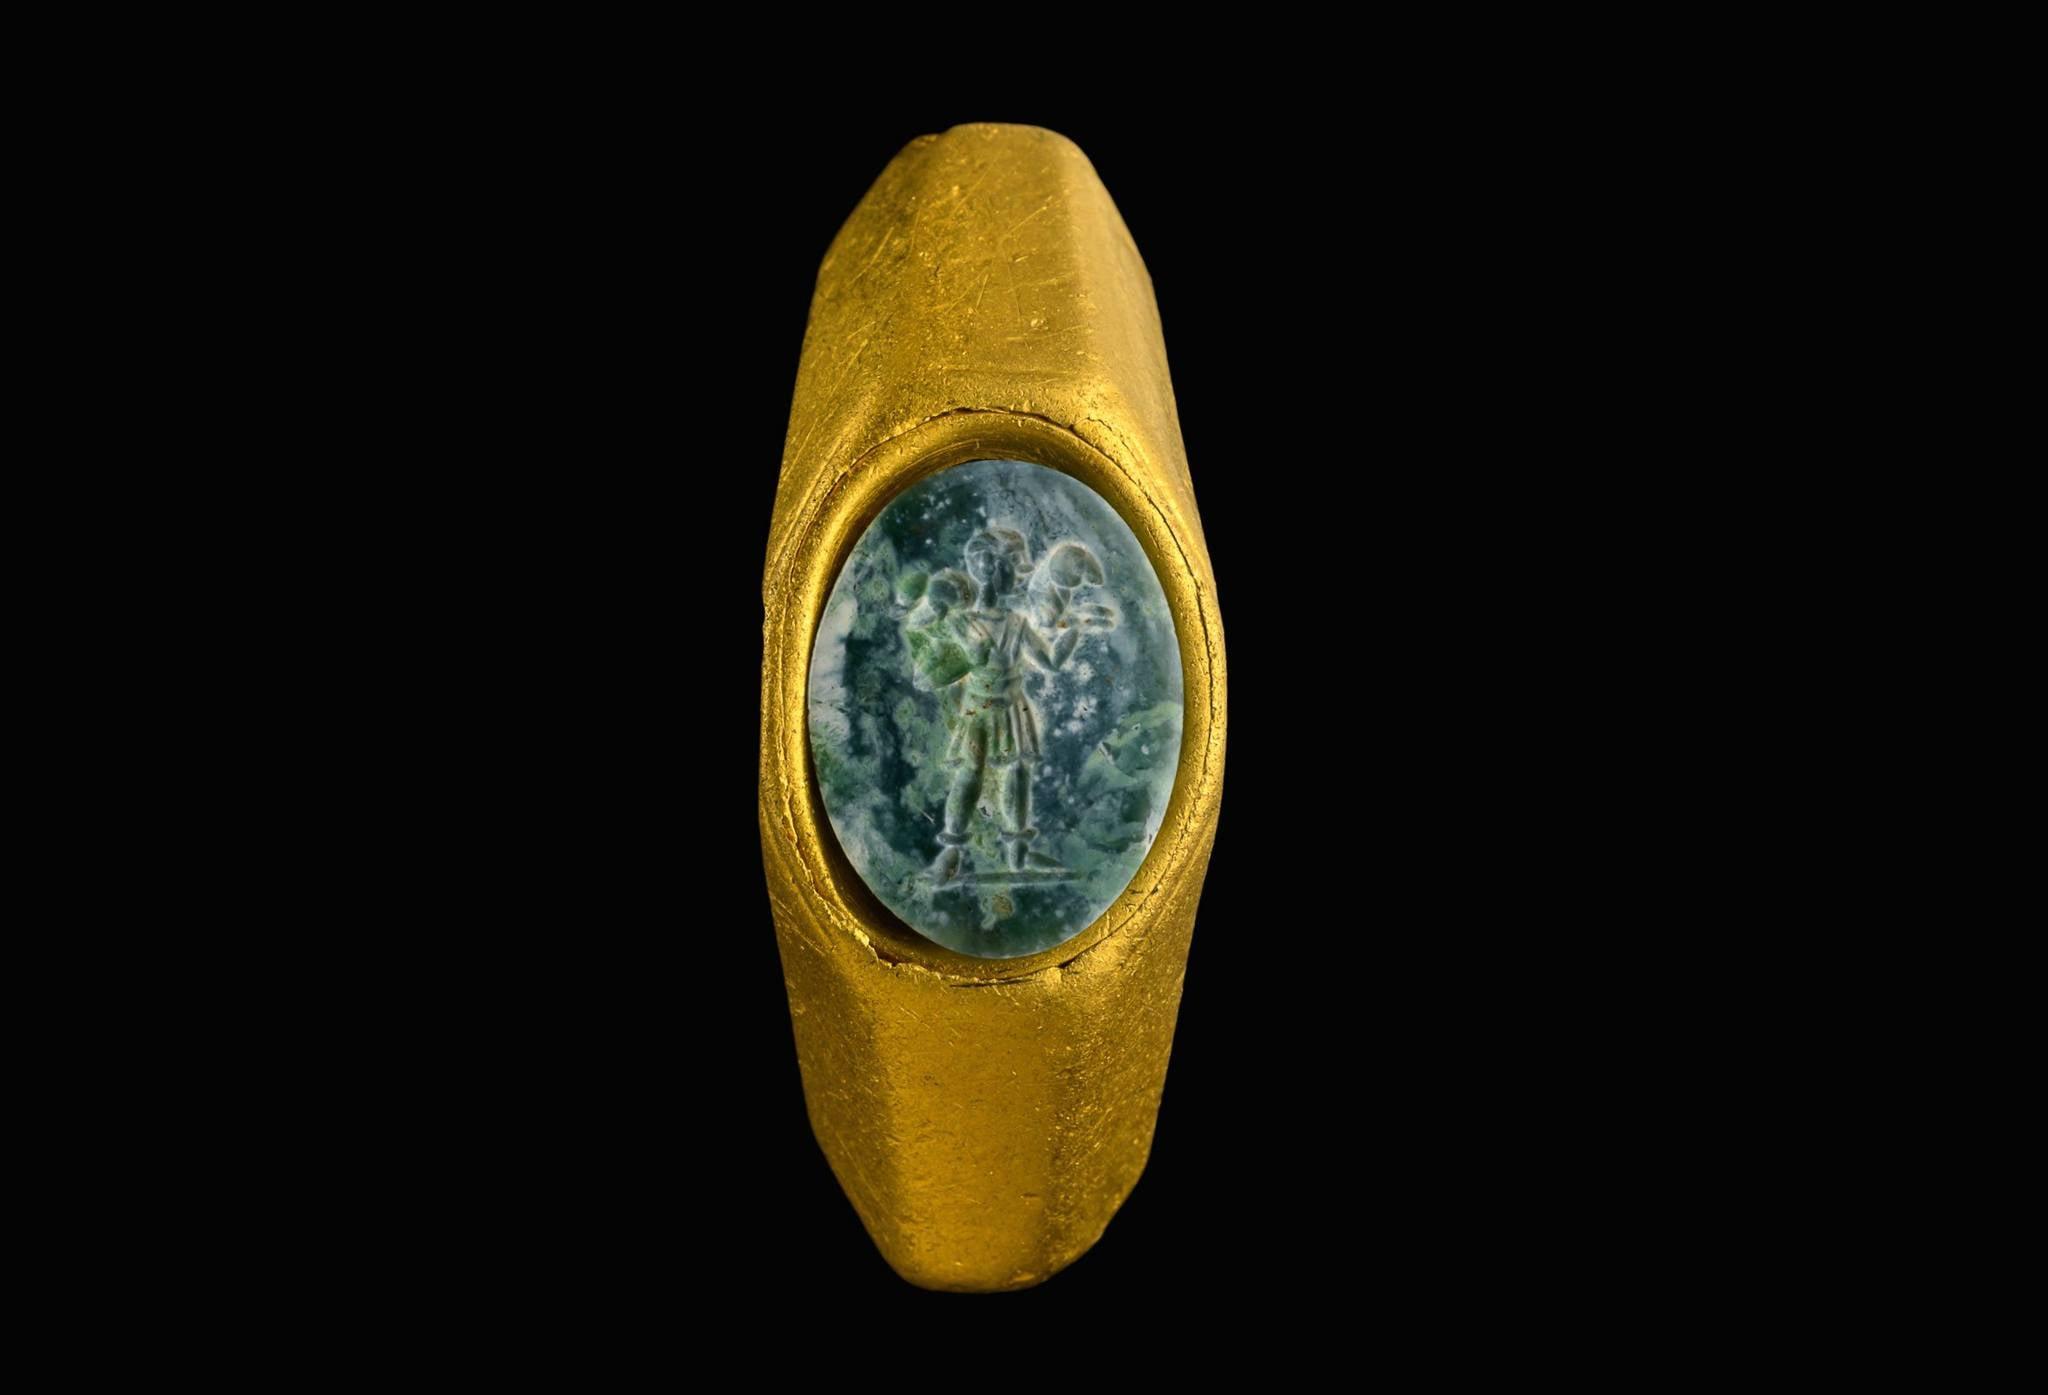 Inelul datează din perioada Imperiului Roman